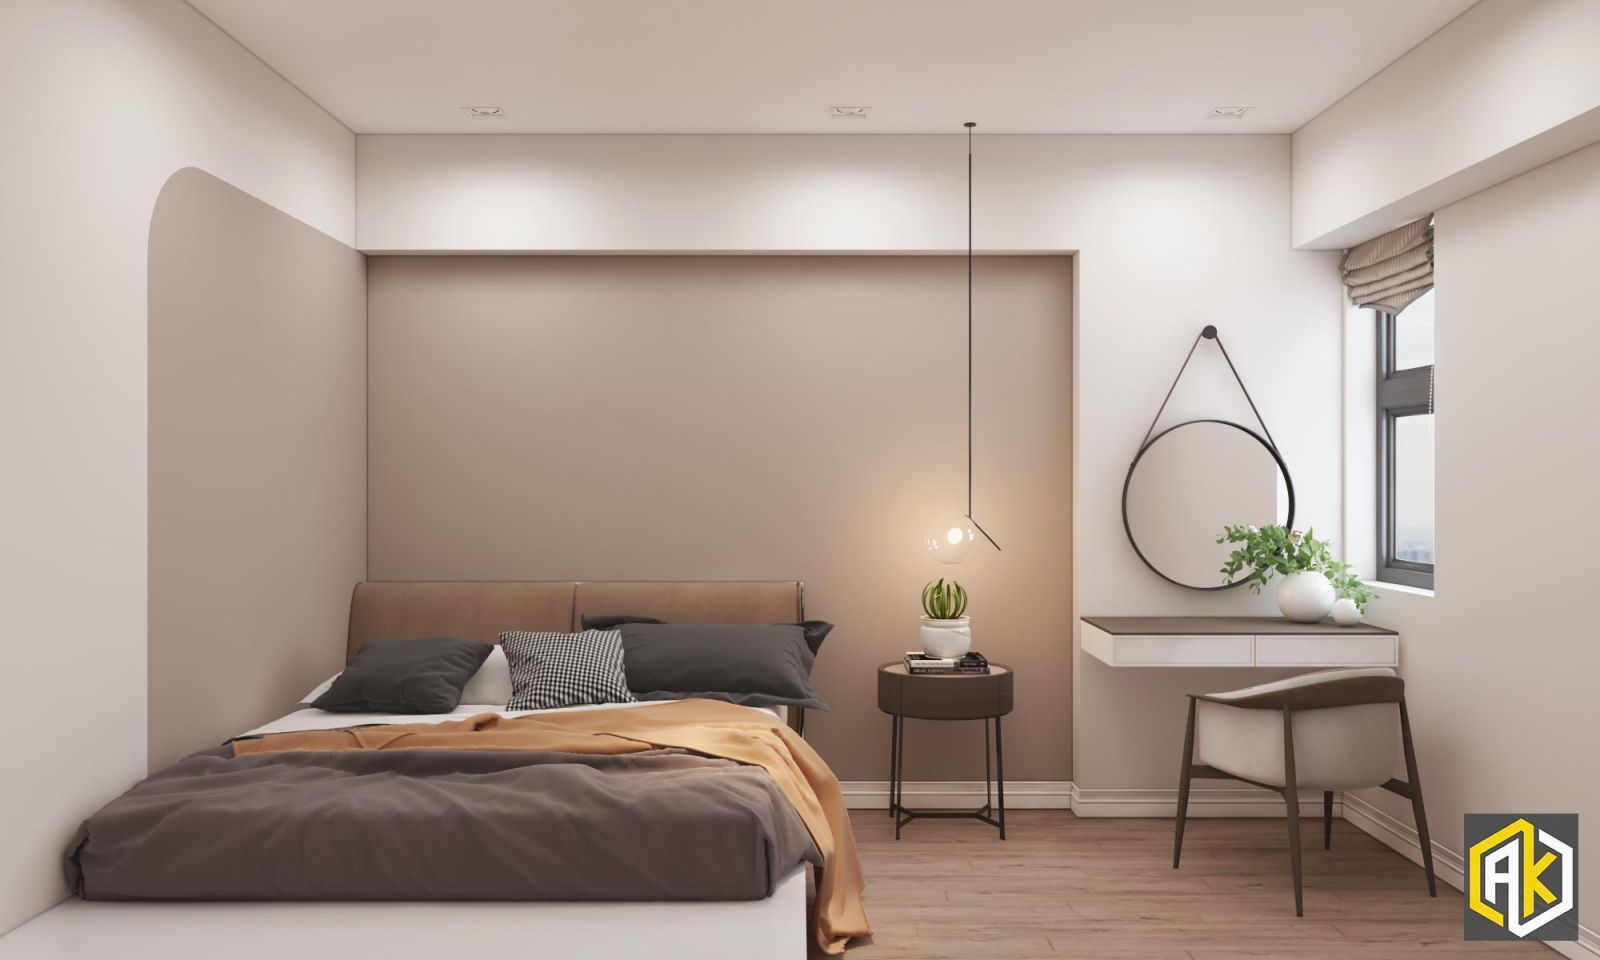 Thiết kế chung cư 70m2 - không gian phòng ngủ được bố trí nội thất tối giản nhất